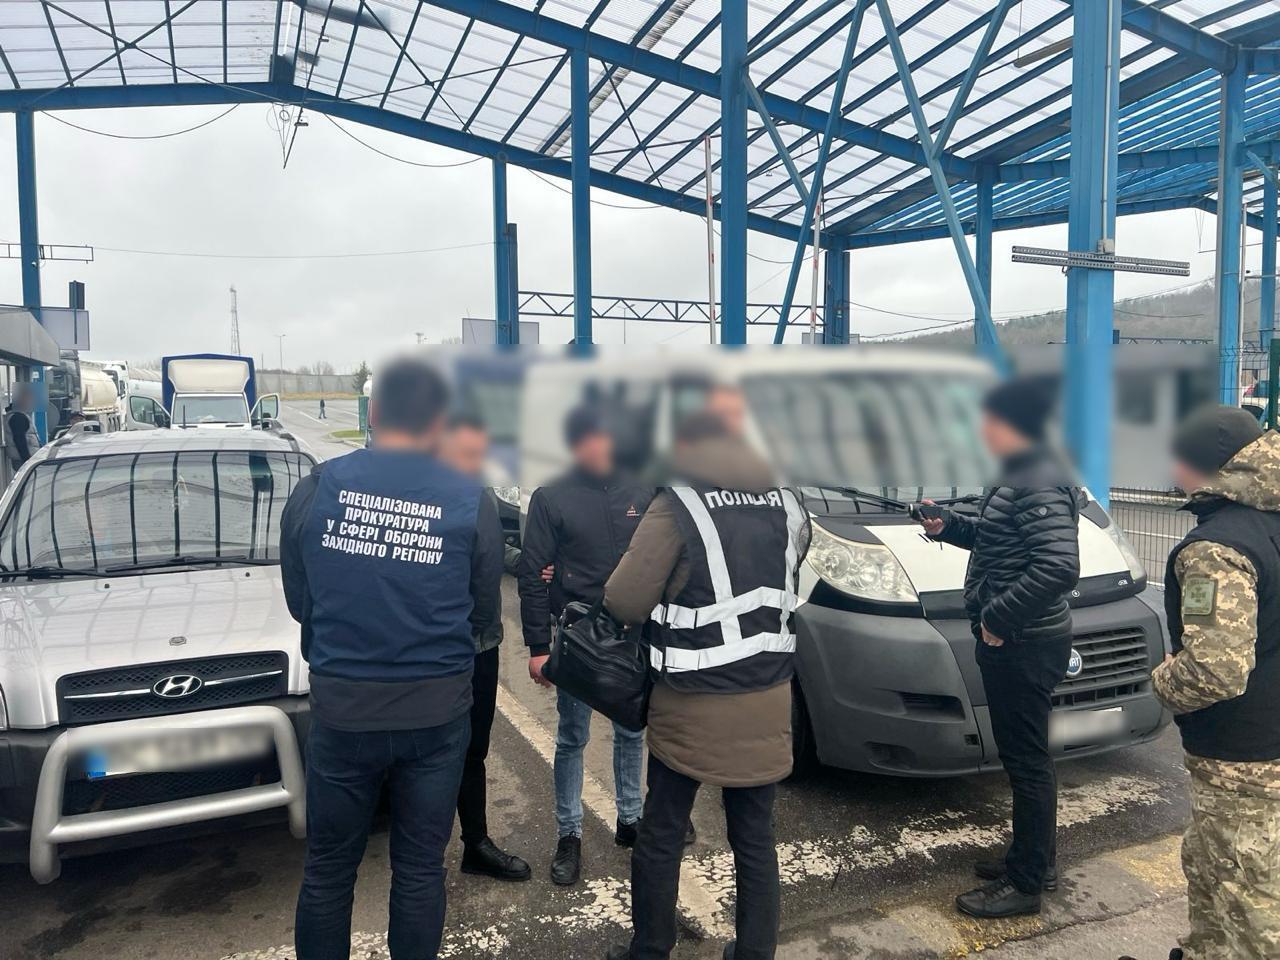 A bel- és belső biztonsági tisztek, valamint a lvivi határőrség műveleti és keresési egysége leleplezett egy ukránt, aki illegálisan szándékozott átlépni az államhatárt.